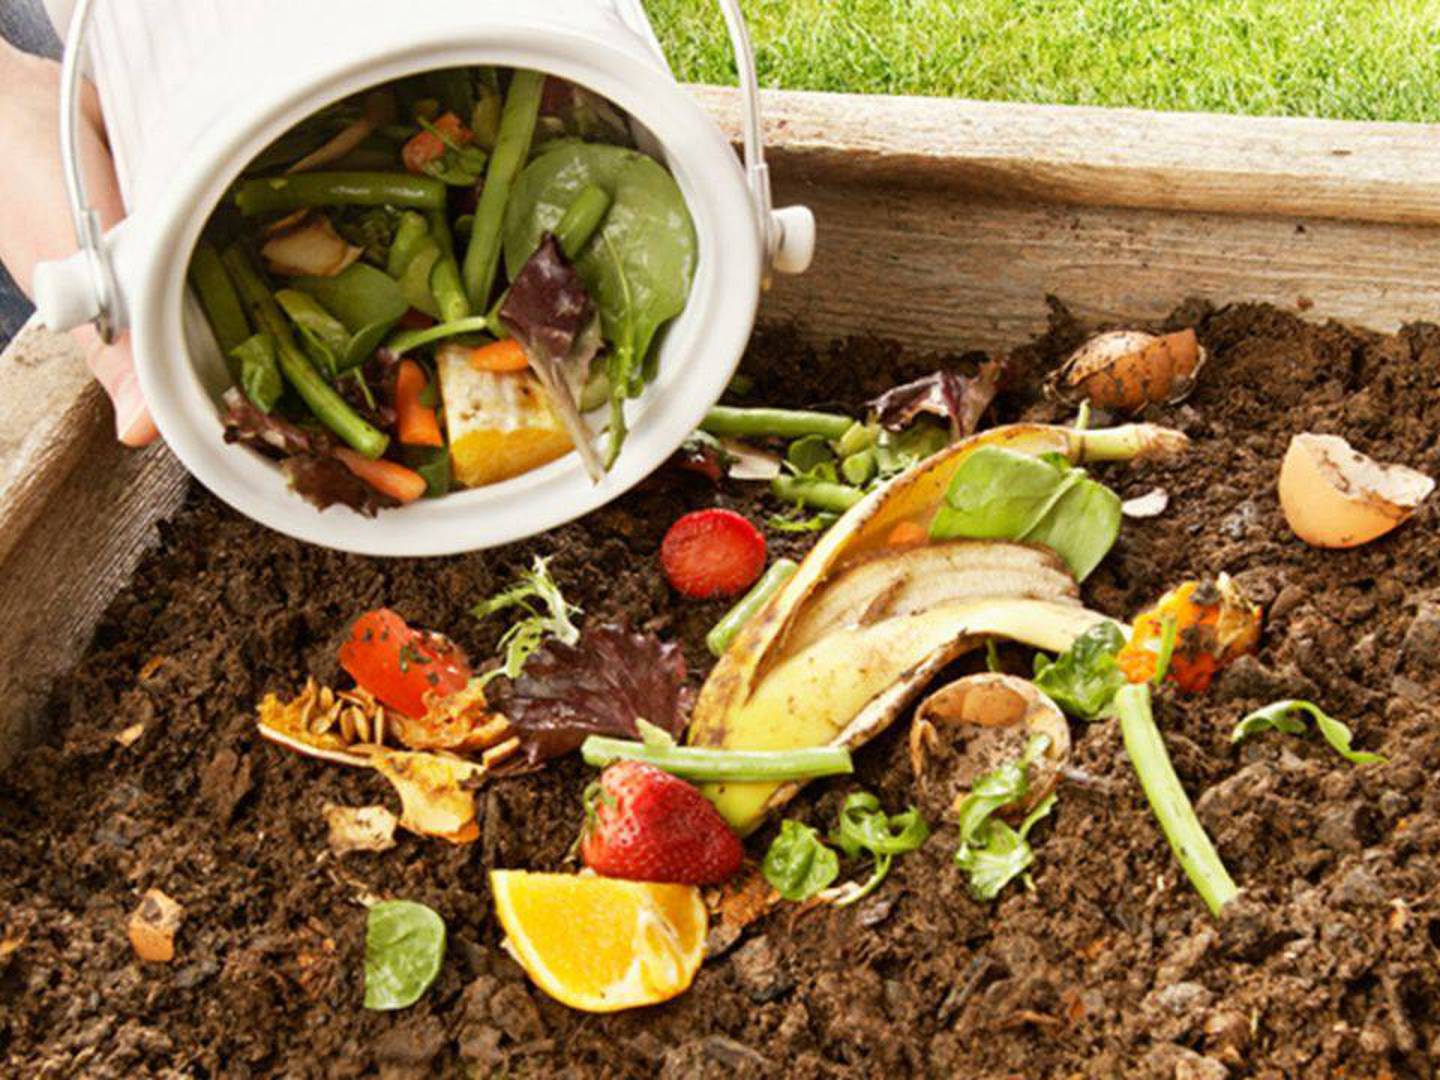 FDM Bio para los residuos orgánicos de la cocina antes de la compost Cubo de basura de 7 litros 